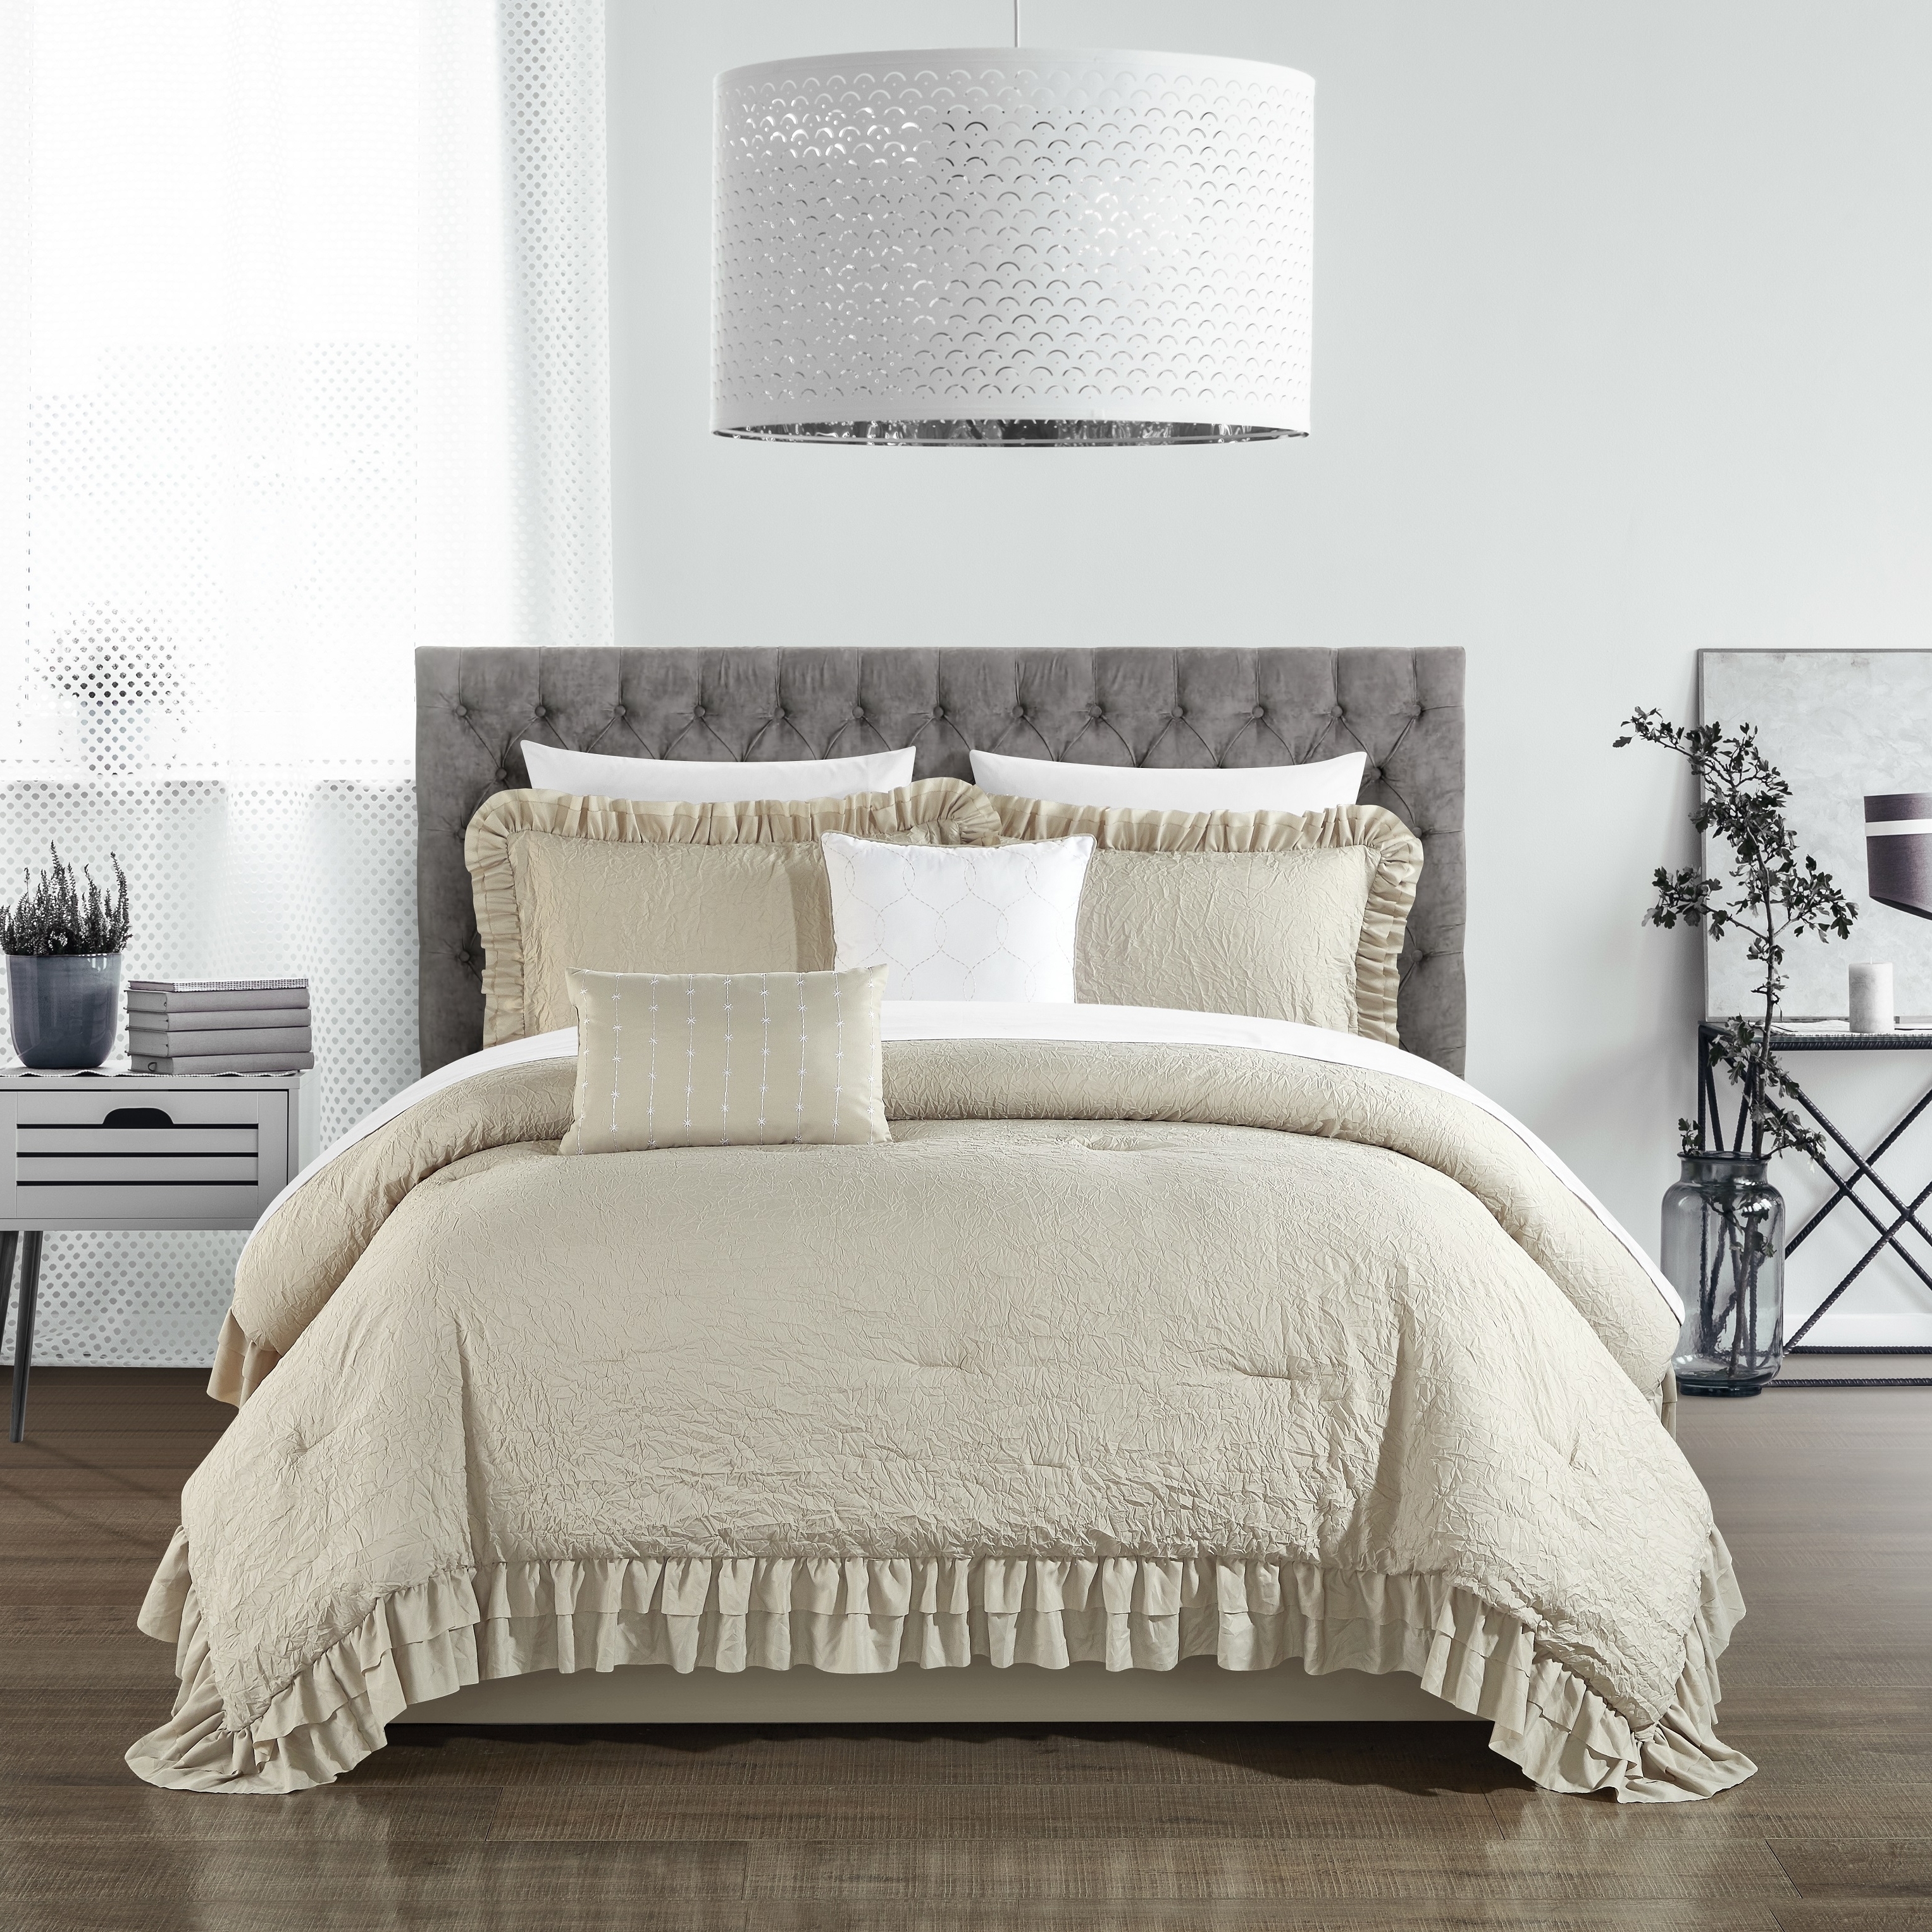 5 Piece Kensley Comforter Set Washed Crinkle Ruffled Flange Border Design Bedding - Grey, Twin